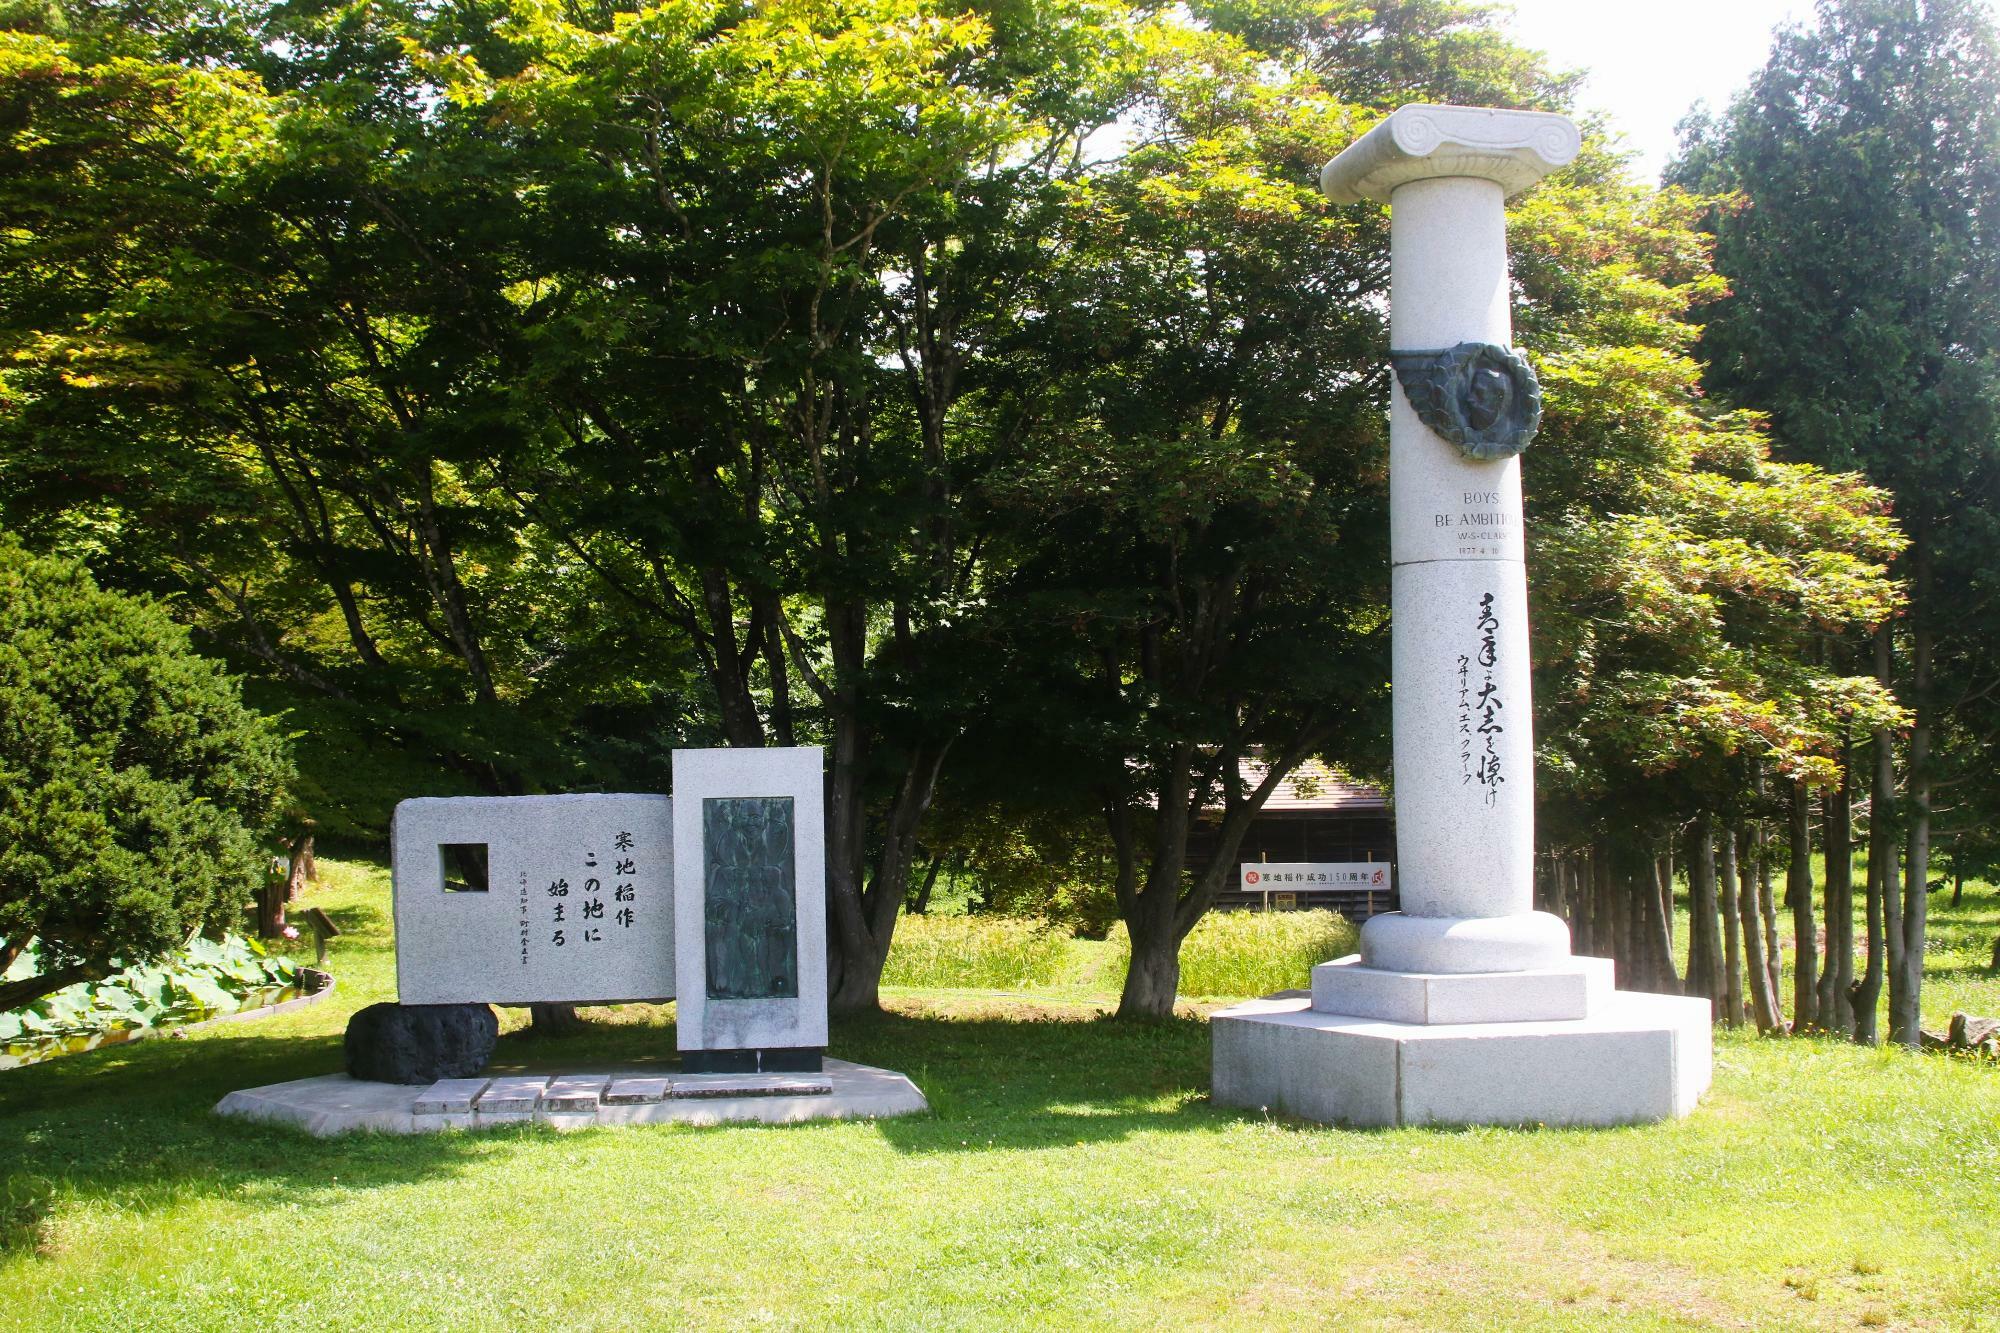 「クラーク記念碑」(右)と「寒地稲作この地に始まる」の碑(左)